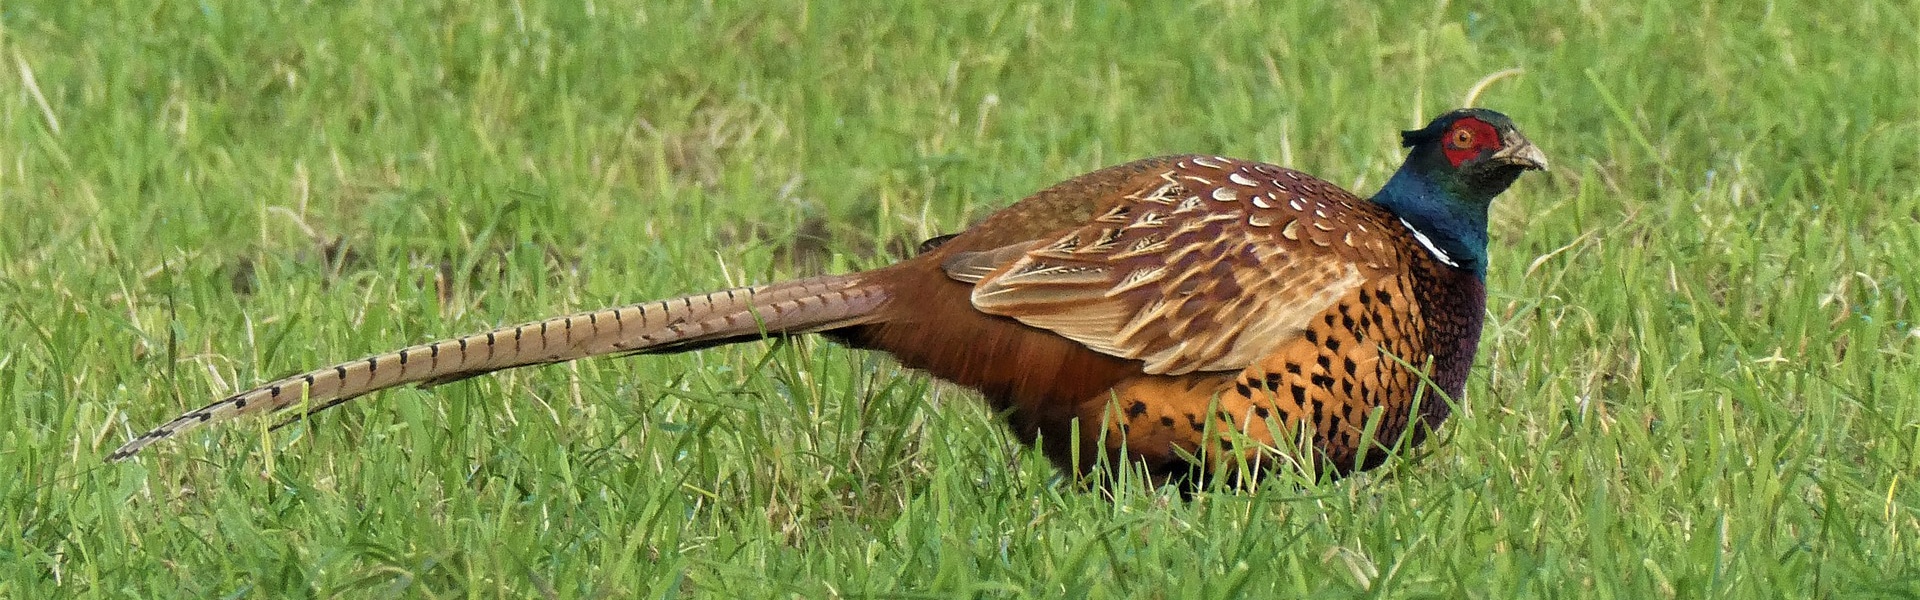 A pheasant